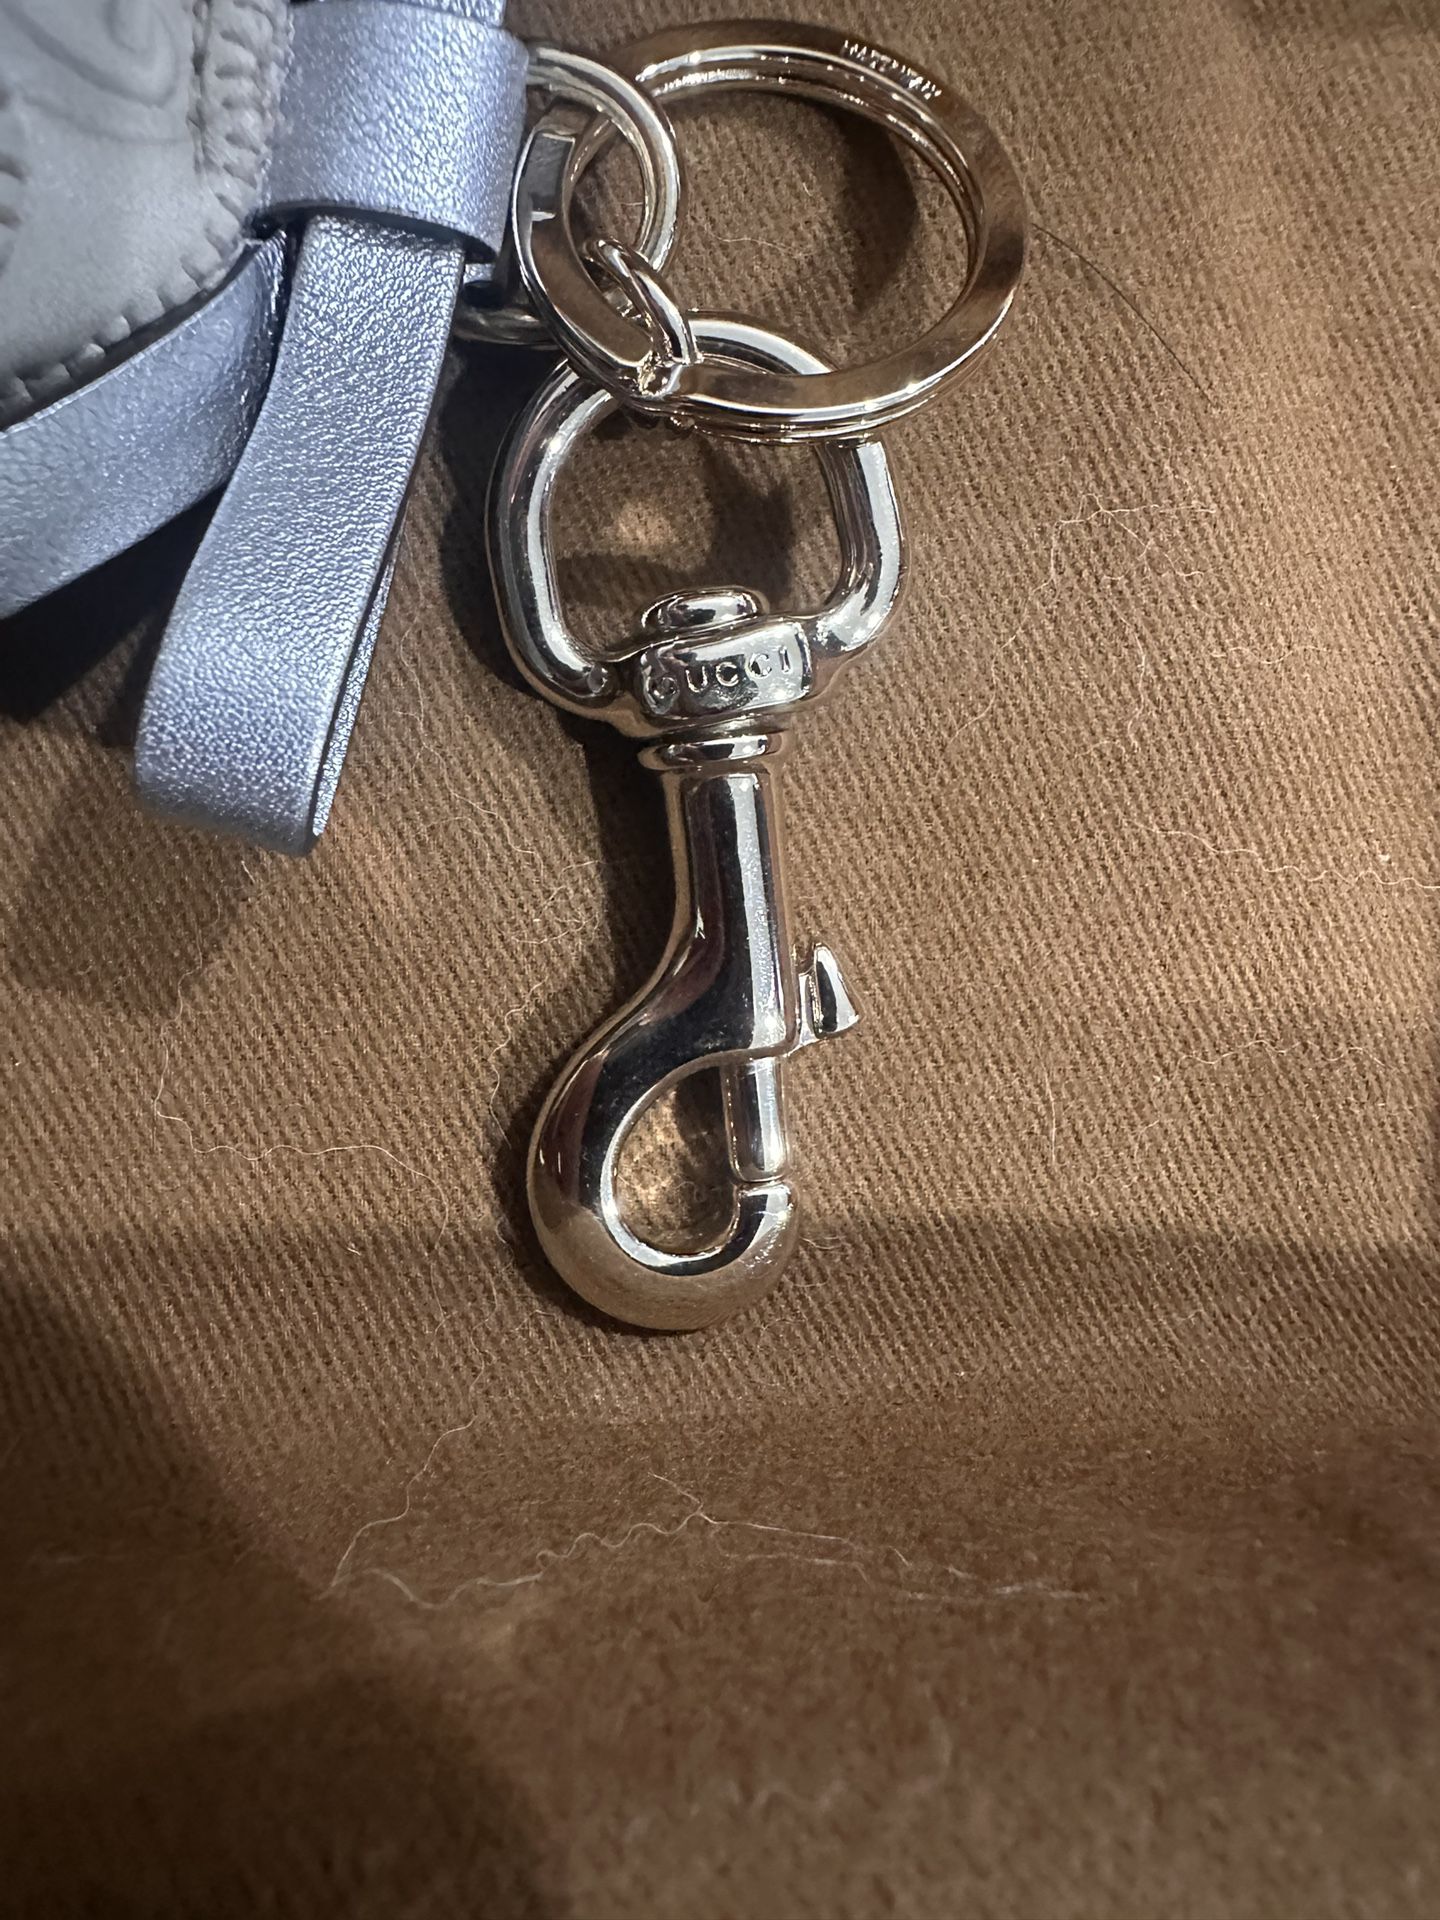 GUCCI Guccioli Beagle Sam Dog Bag Charm Keyring Key Chain